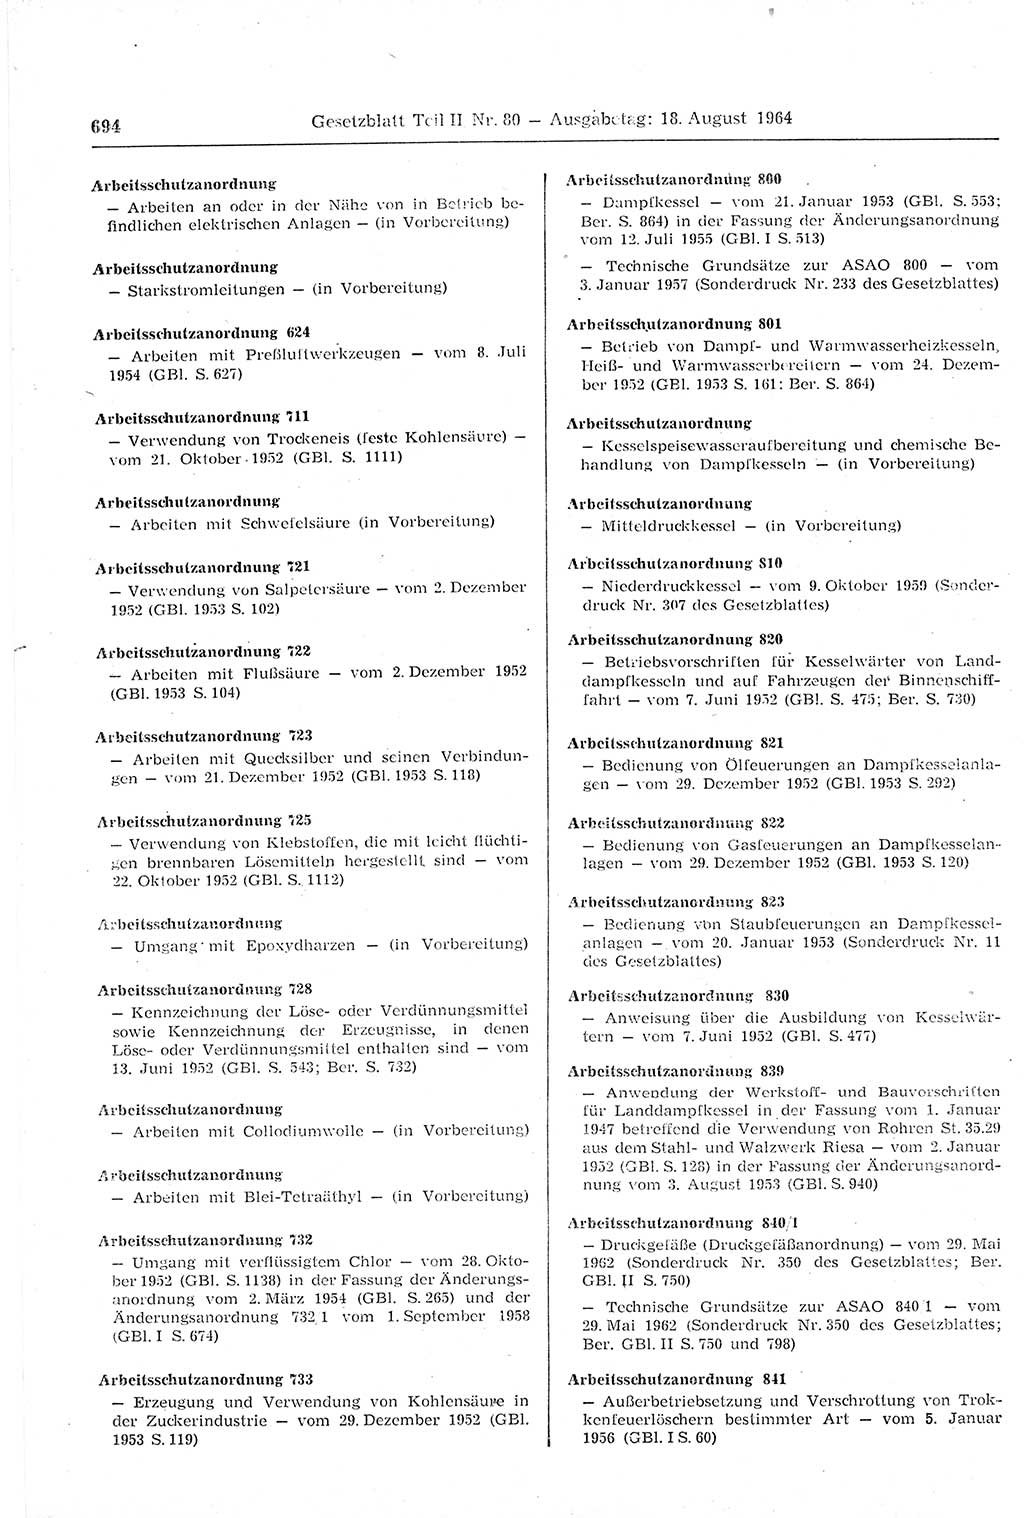 Gesetzblatt (GBl.) der Deutschen Demokratischen Republik (DDR) Teil ⅠⅠ 1964, Seite 694 (GBl. DDR ⅠⅠ 1964, S. 694)